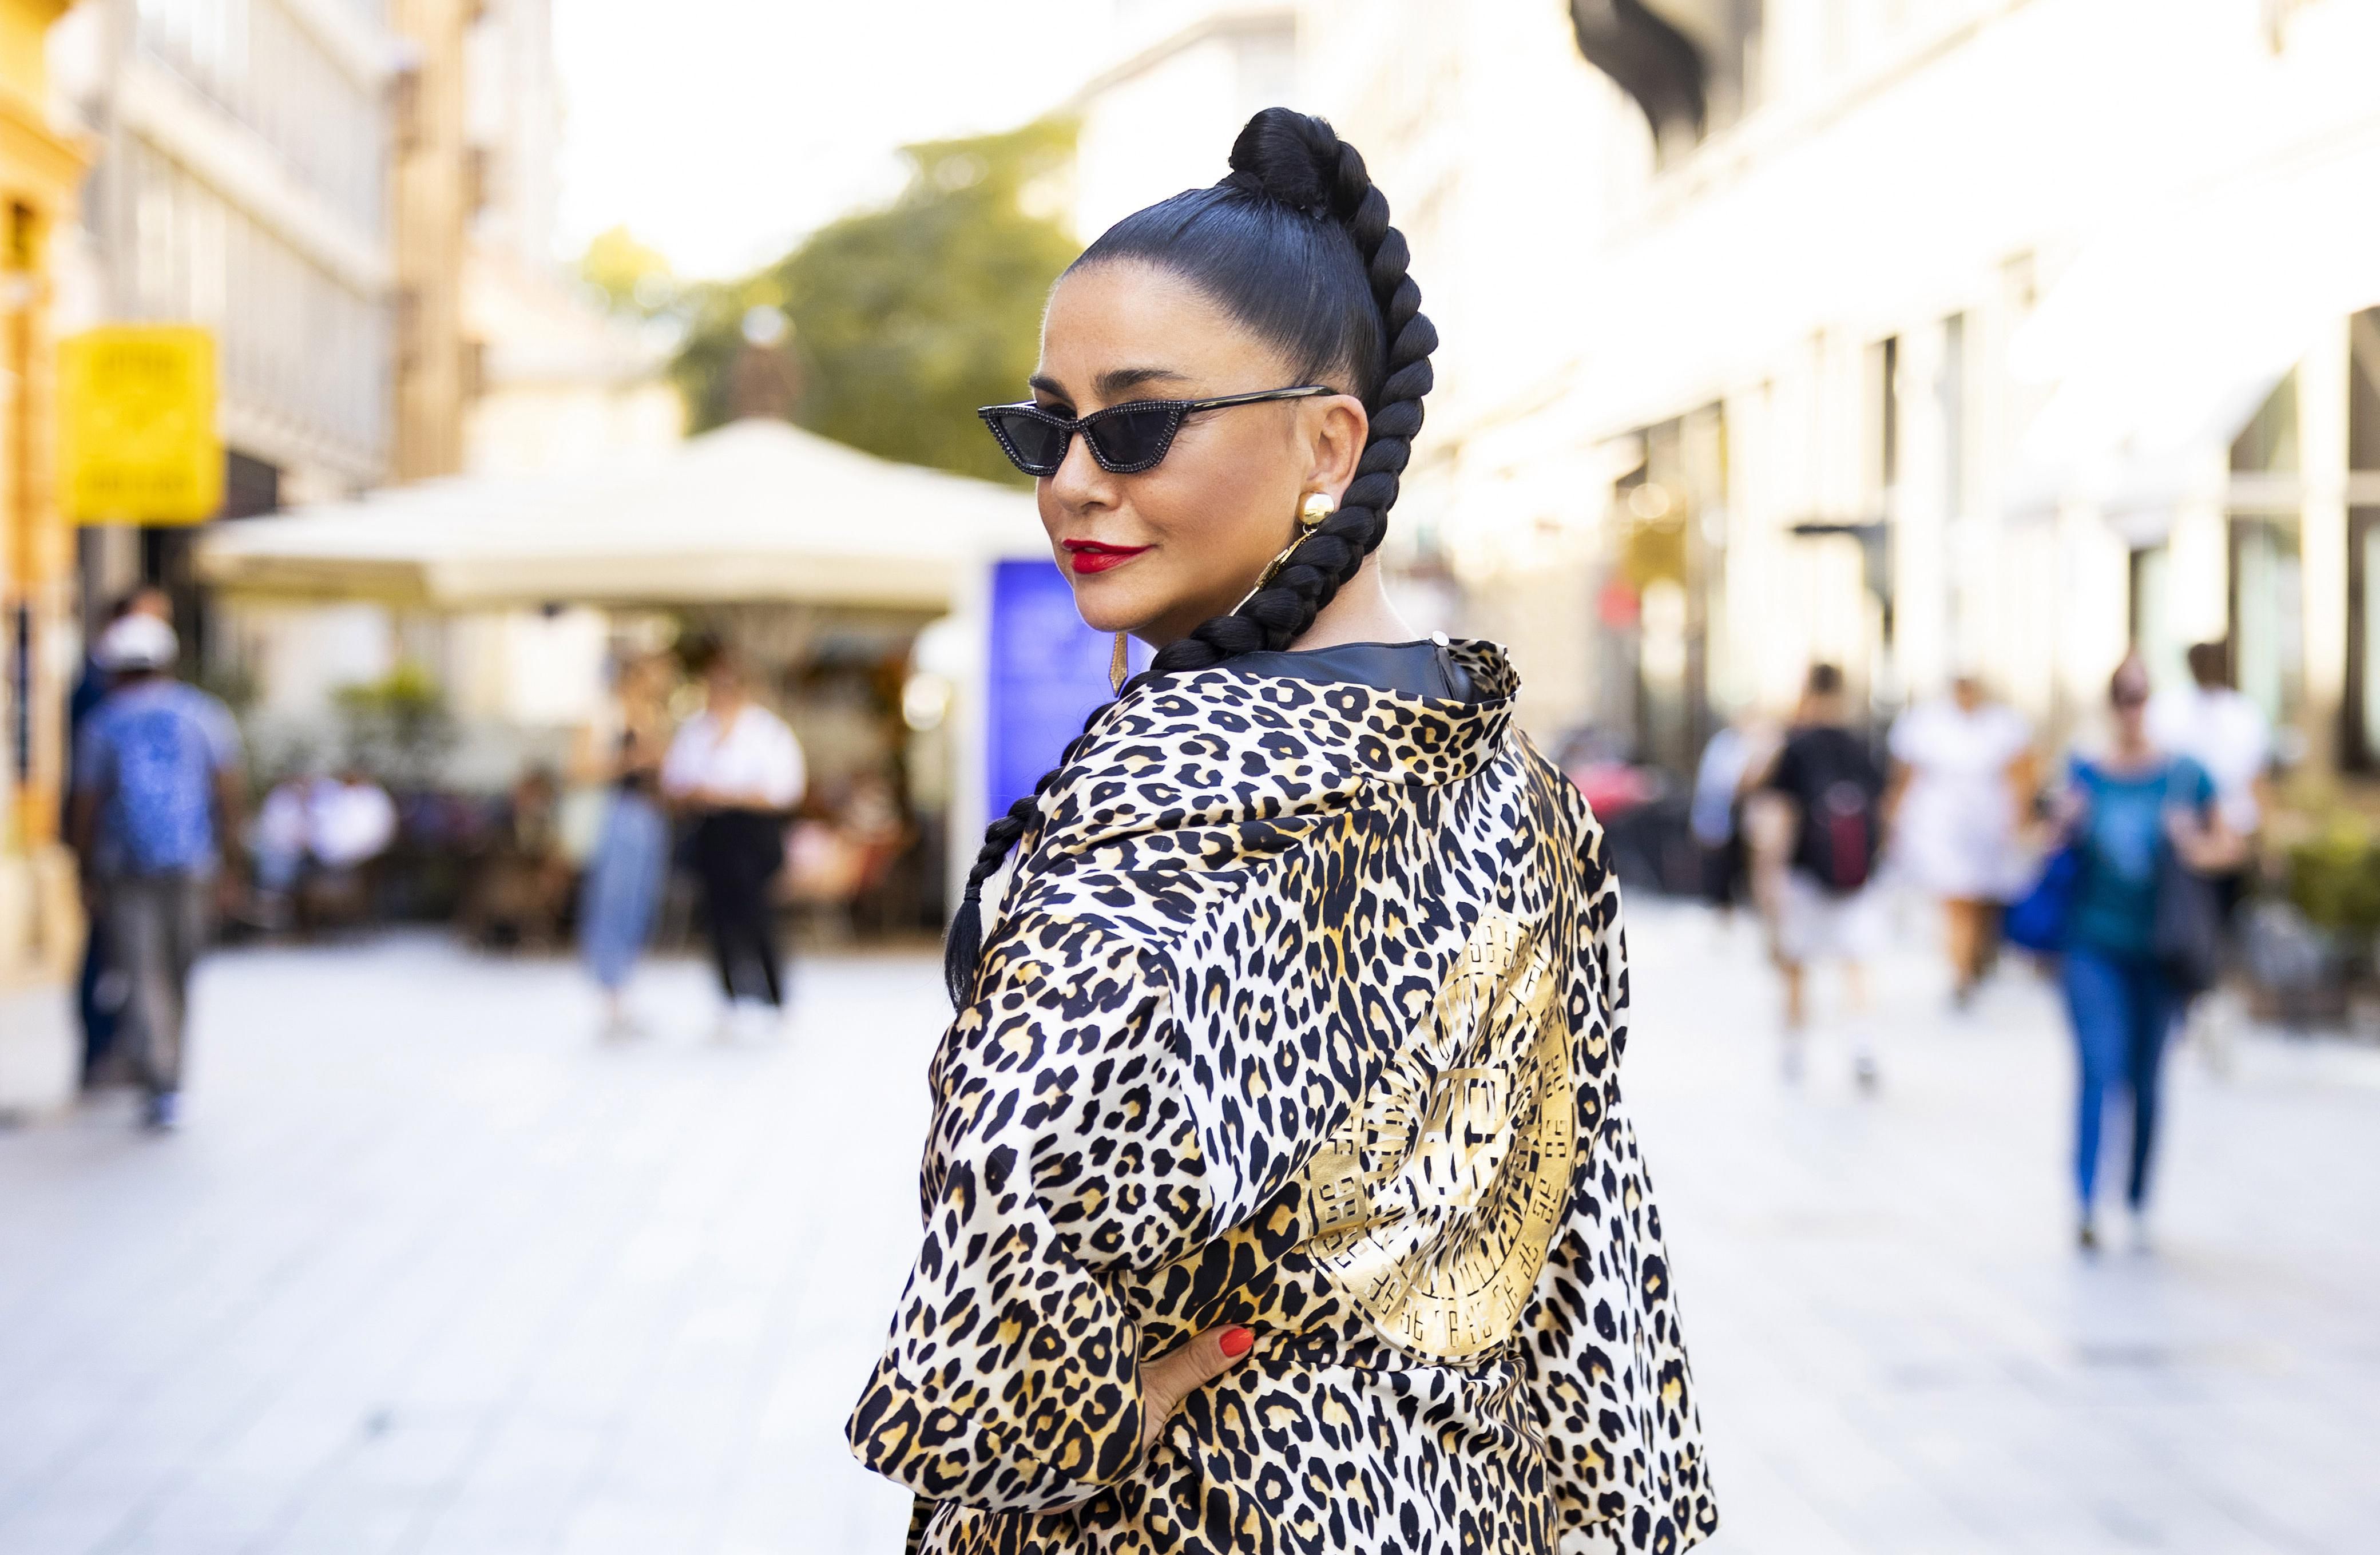 Alka Vuica zagrebačkim ulicama prošetala u odličnom stajlingu u kojem glavnu riječ vodi leopard uzorak